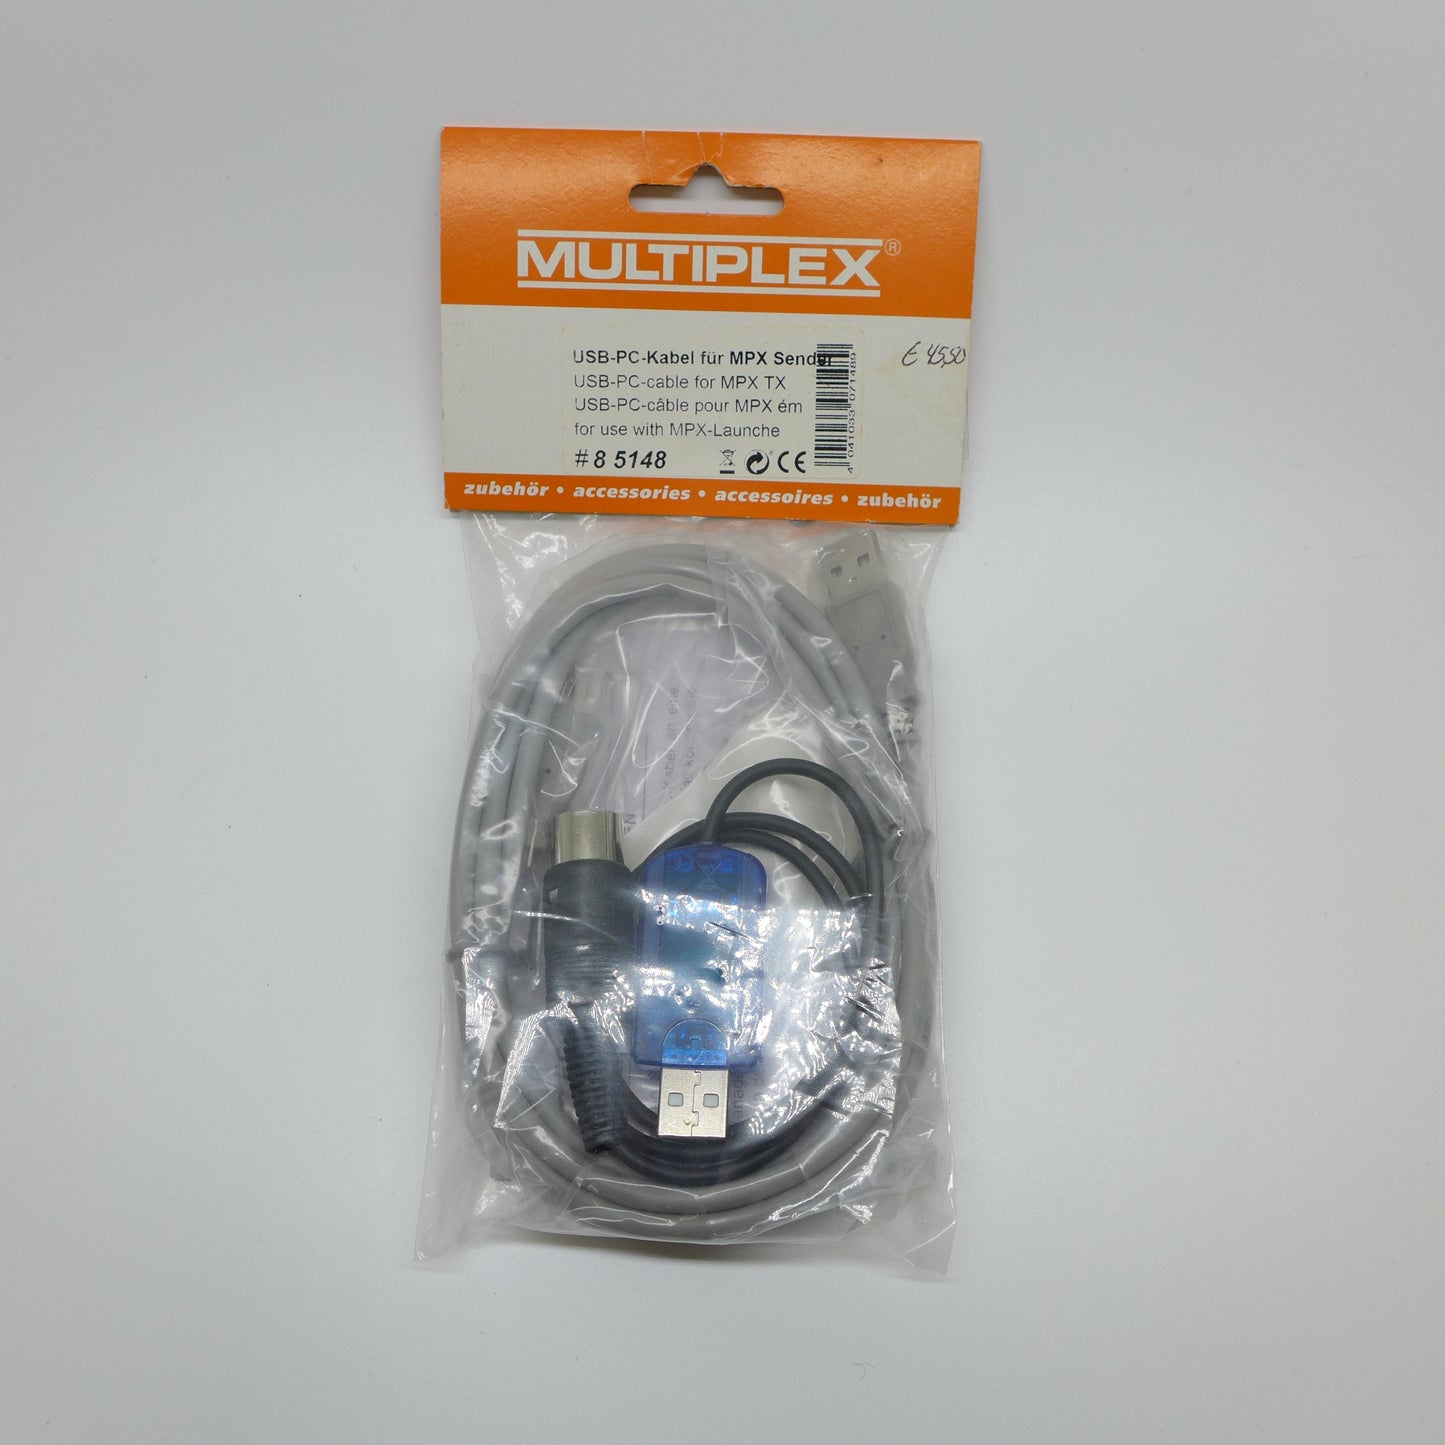 Multiplex USB-PC-Kabel für MPX Sender